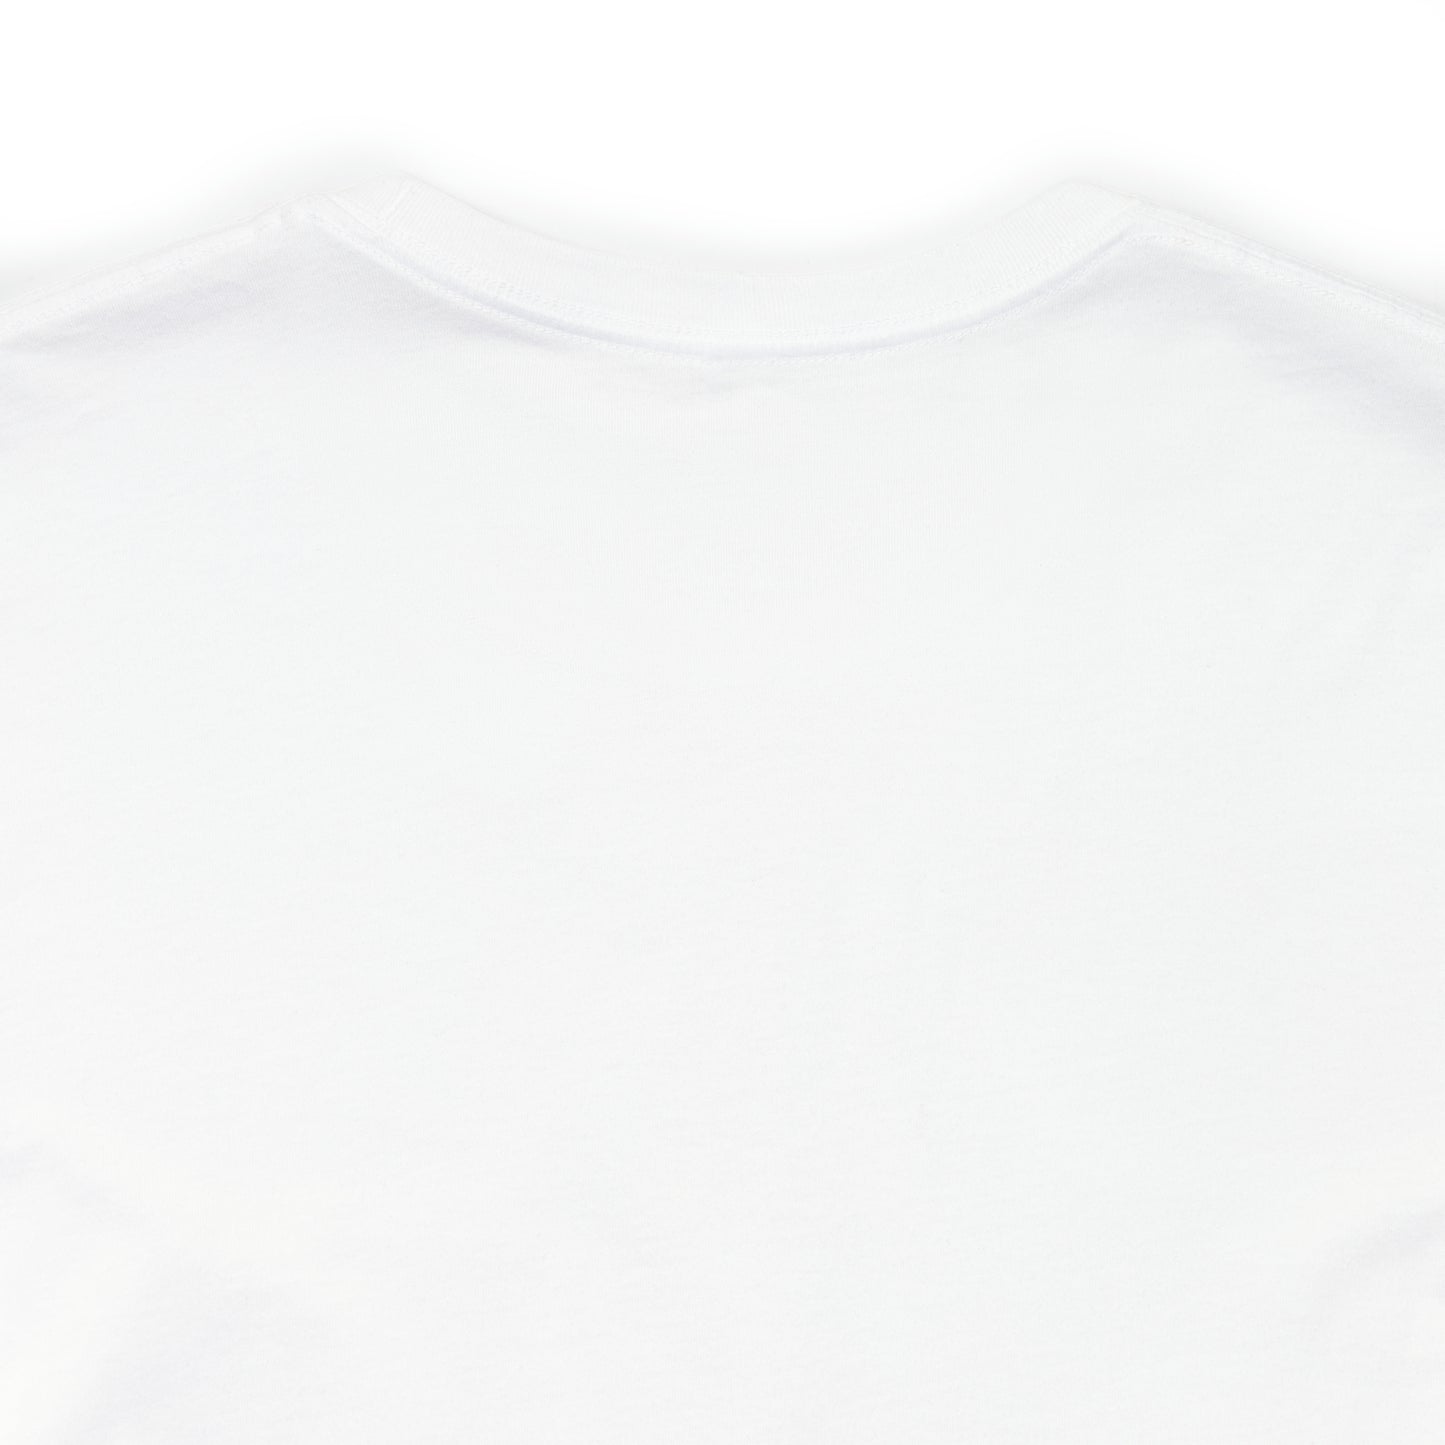 Jenazad x Kira - Epic Seven T-Shirt (Unisex)